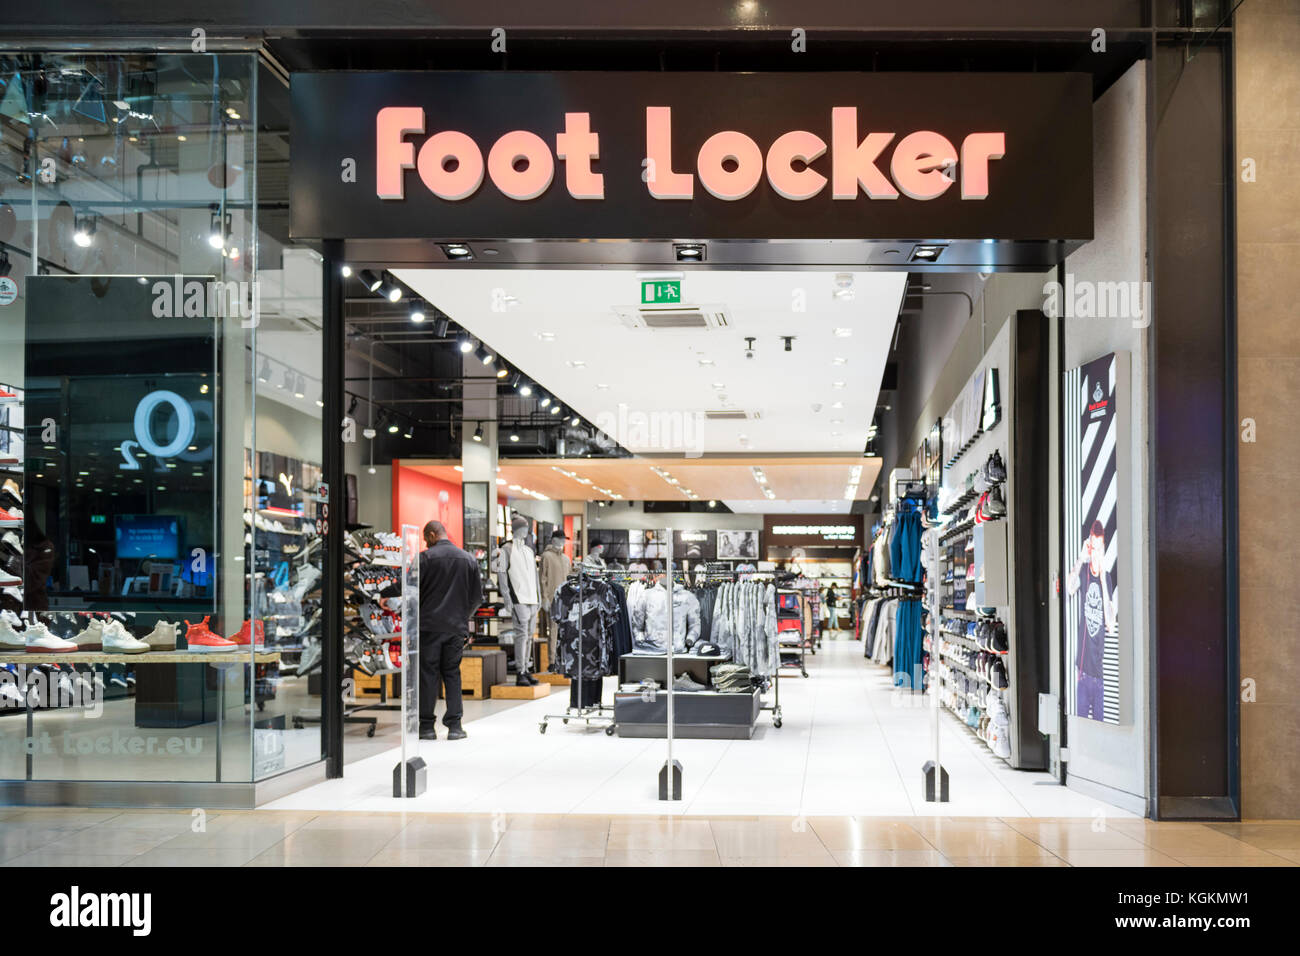 Foot Locker store, UK. Stock Photo